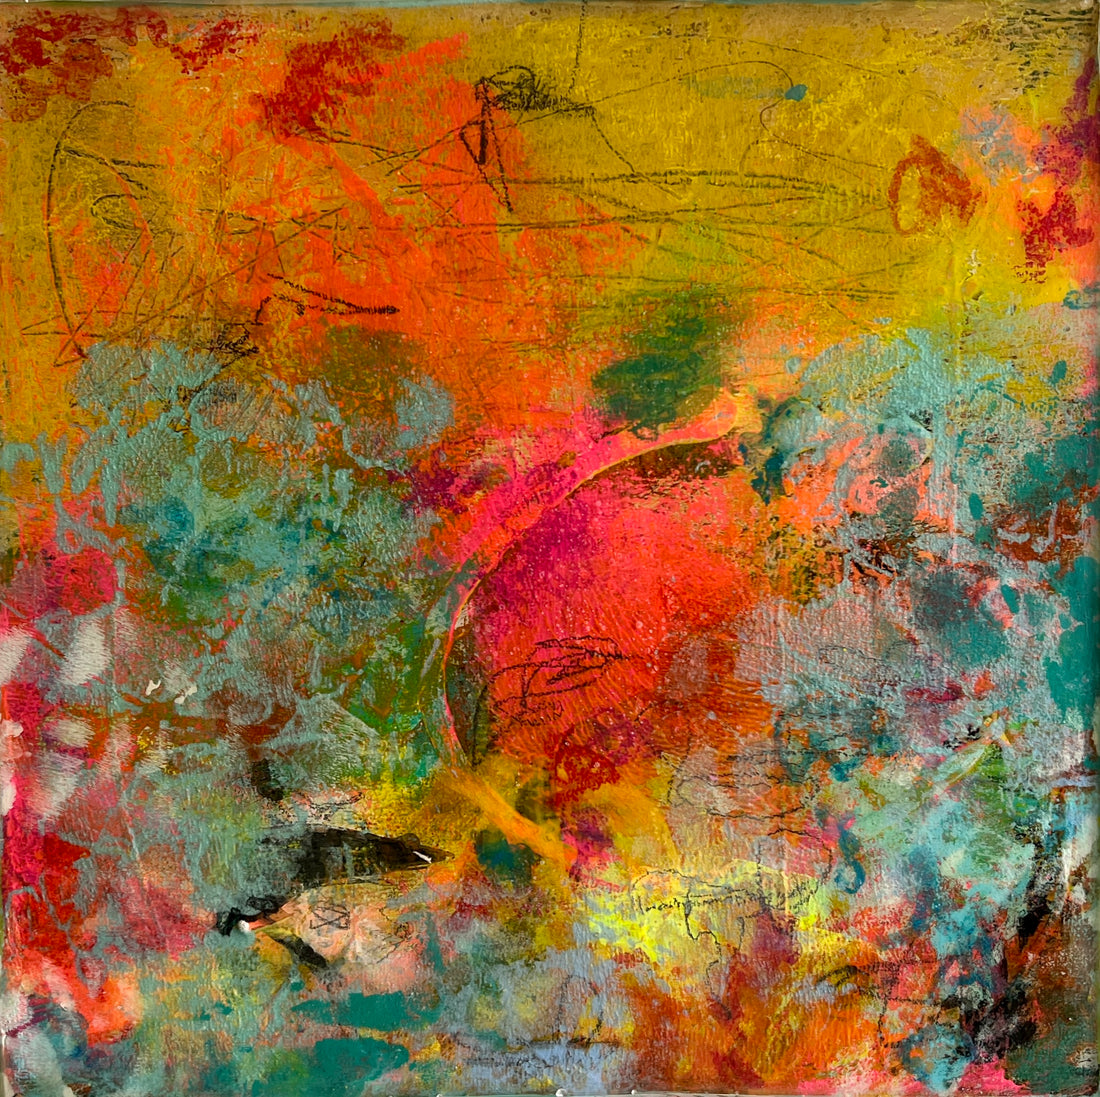 Farben und Emotionen: Die Rolle der Farbpalette in der Abstrakten Kunst